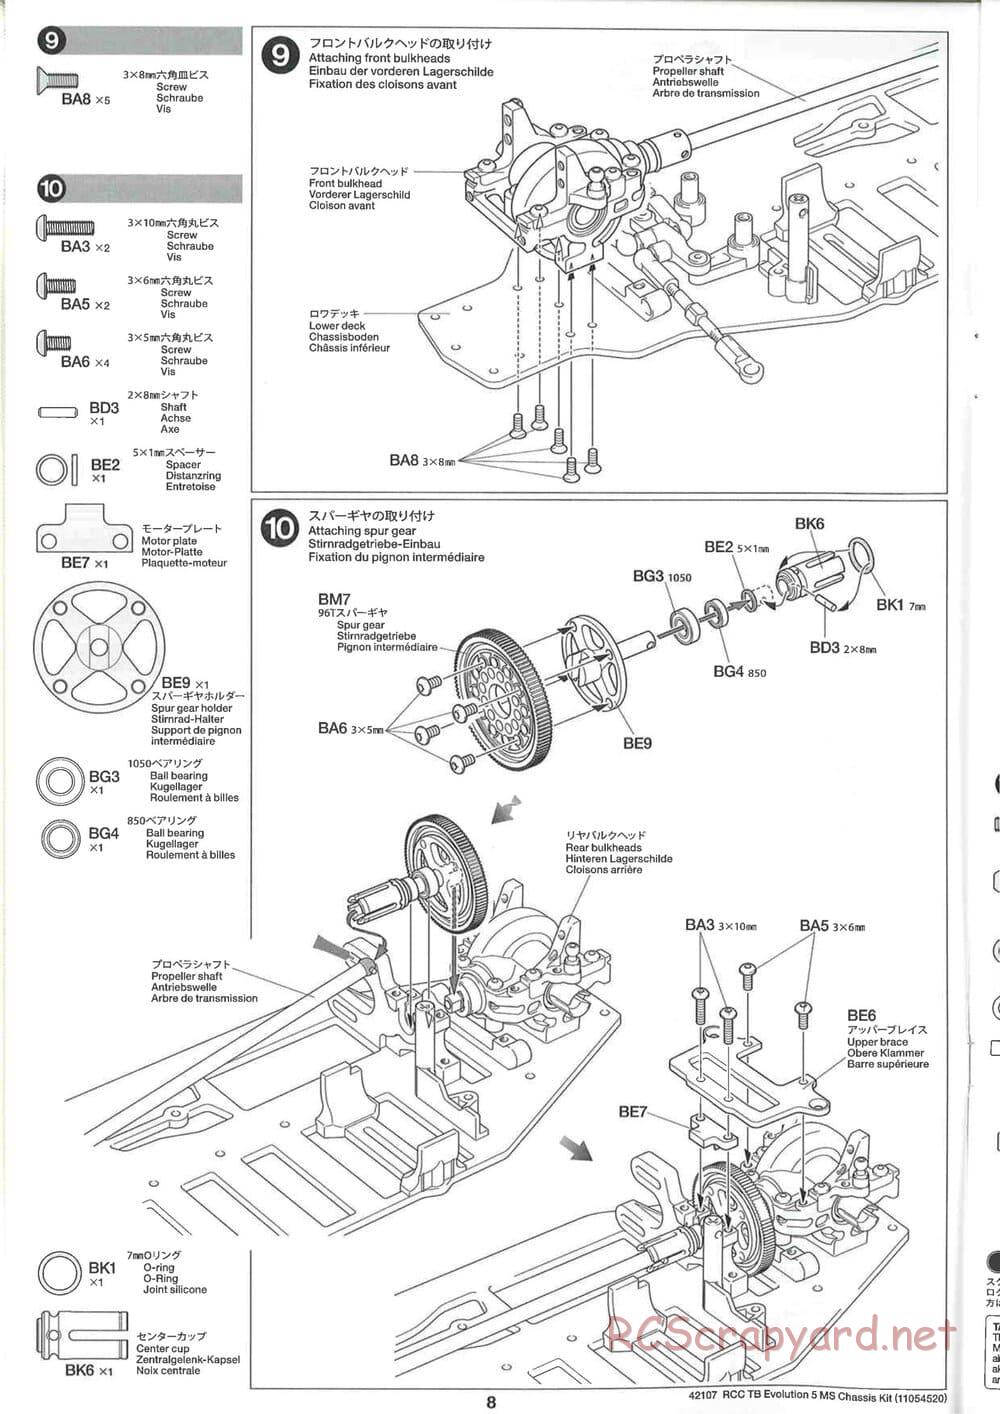 Tamiya - TB Evolution 5 MS Chassis - Manual - Page 8